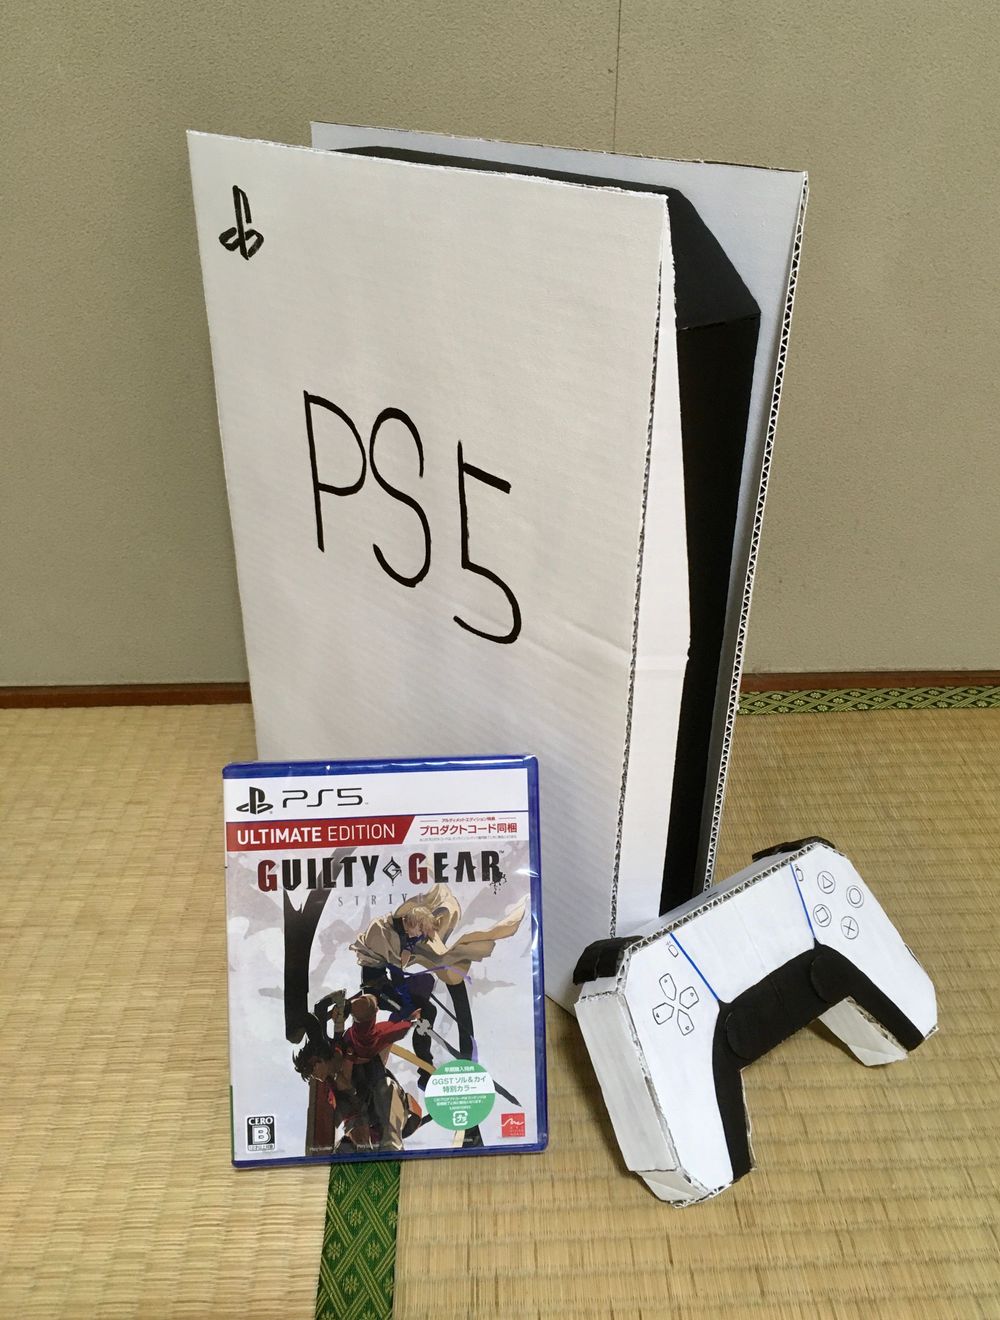 PS5가 너무 가지고싶었던 일본인